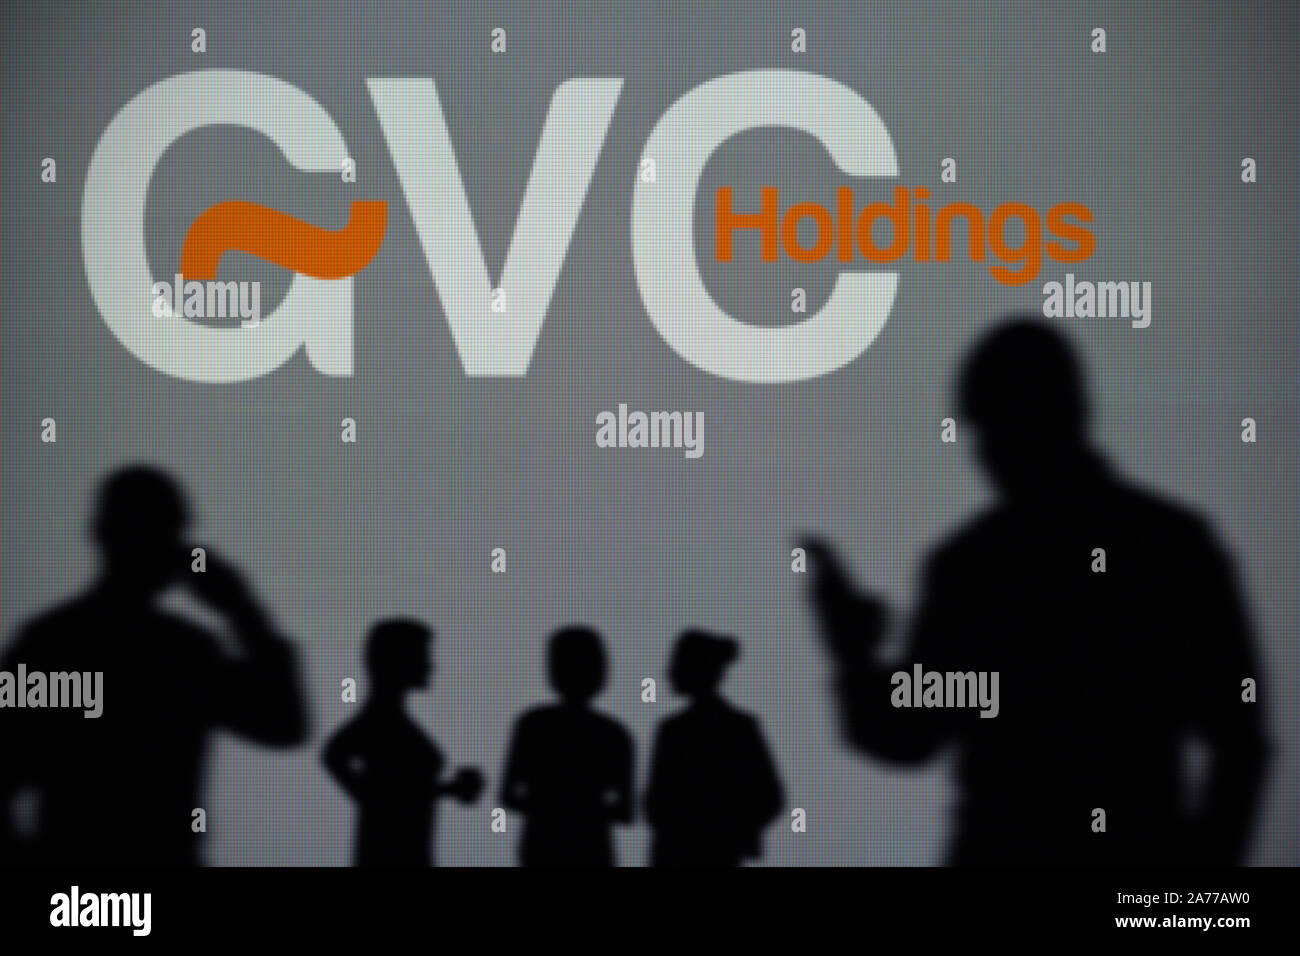 Die GVC Betrieben Logo ist auf einen LED-Bildschirm im Hintergrund, während eine Silhouette Person ein Smartphone verwendet (nur redaktionelle Nutzung) Stockfoto